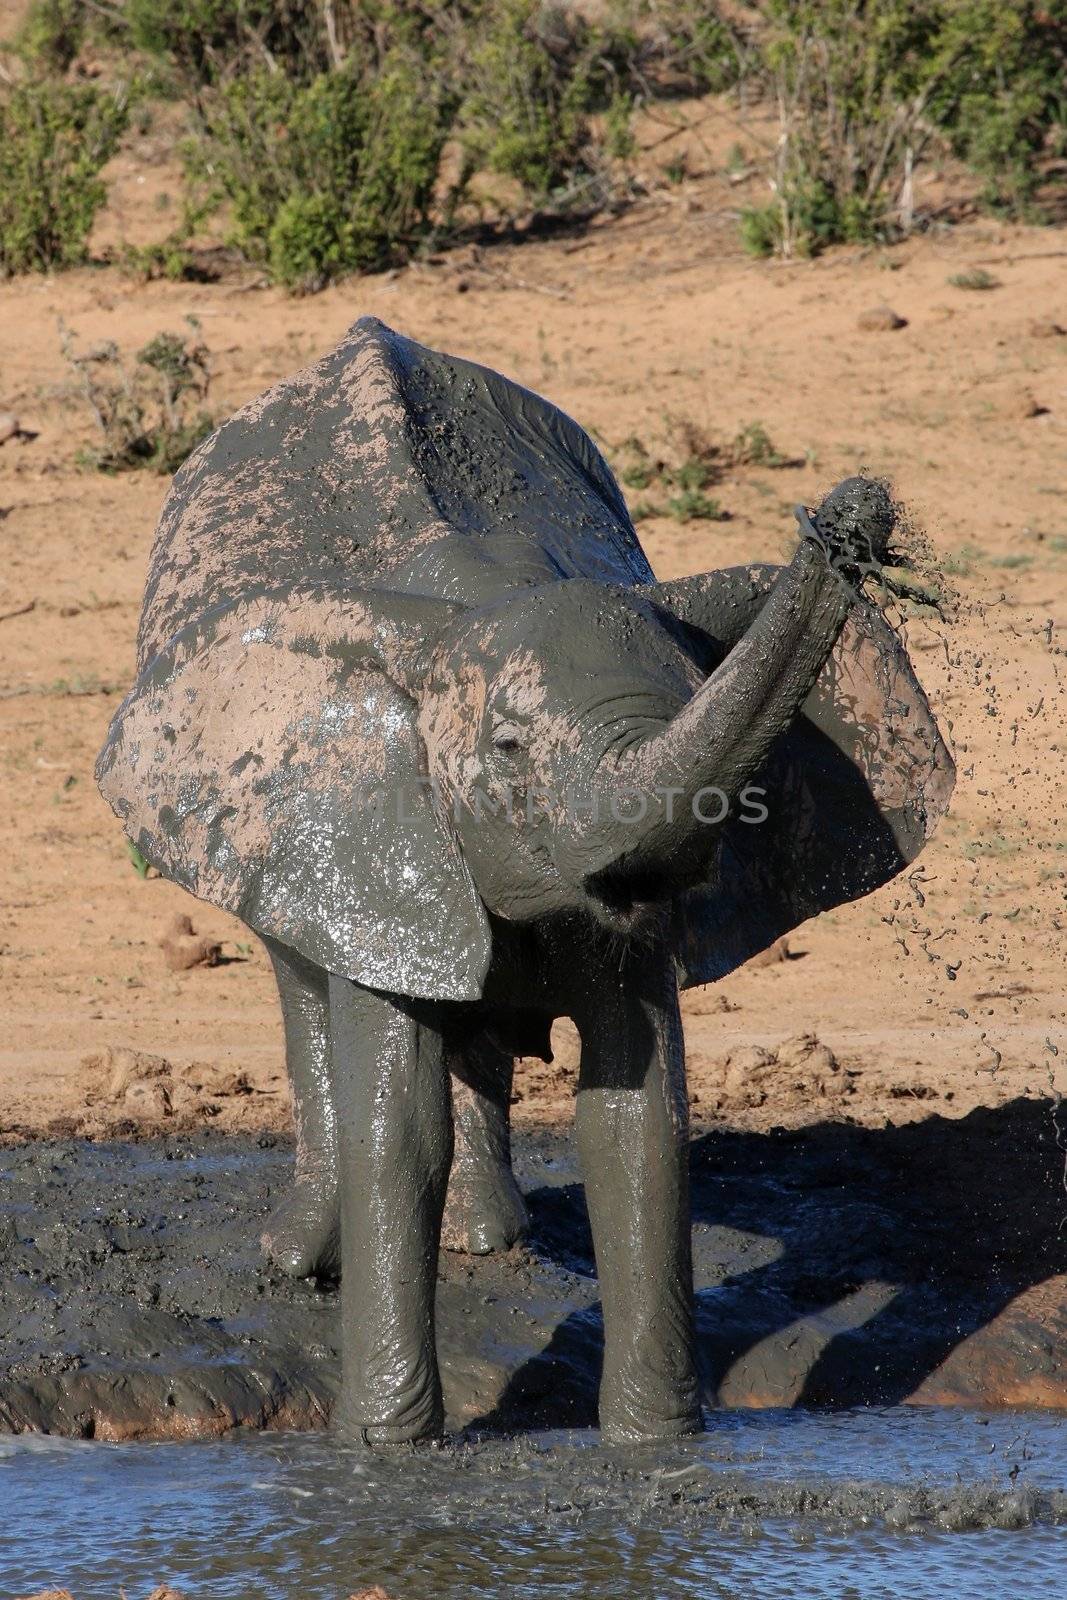 Female African elephant having a mud bath at a waterhole